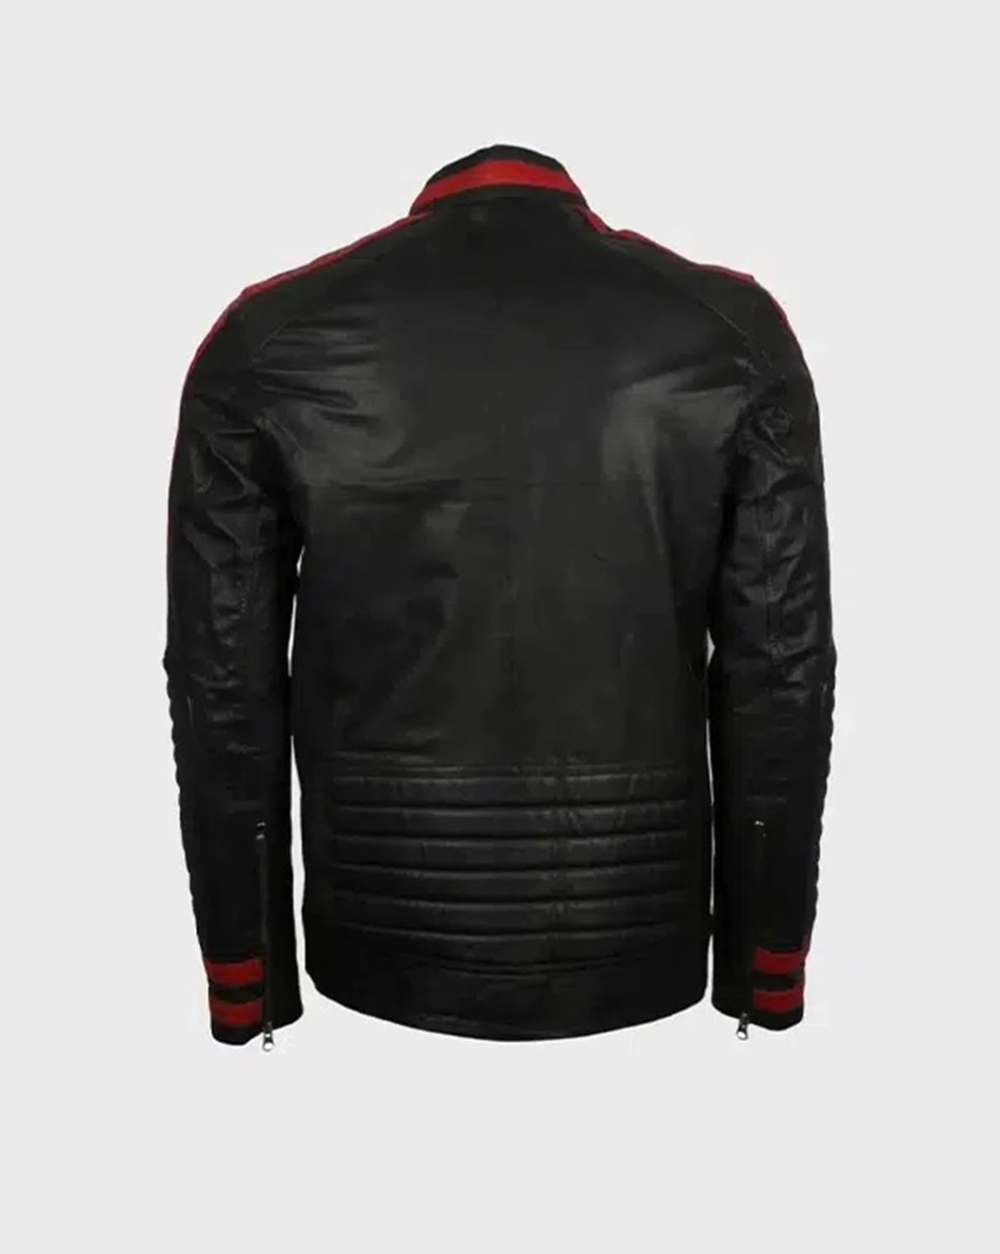 cafered-jacket Mens Cafe Racer Red & Black Leather Jacket